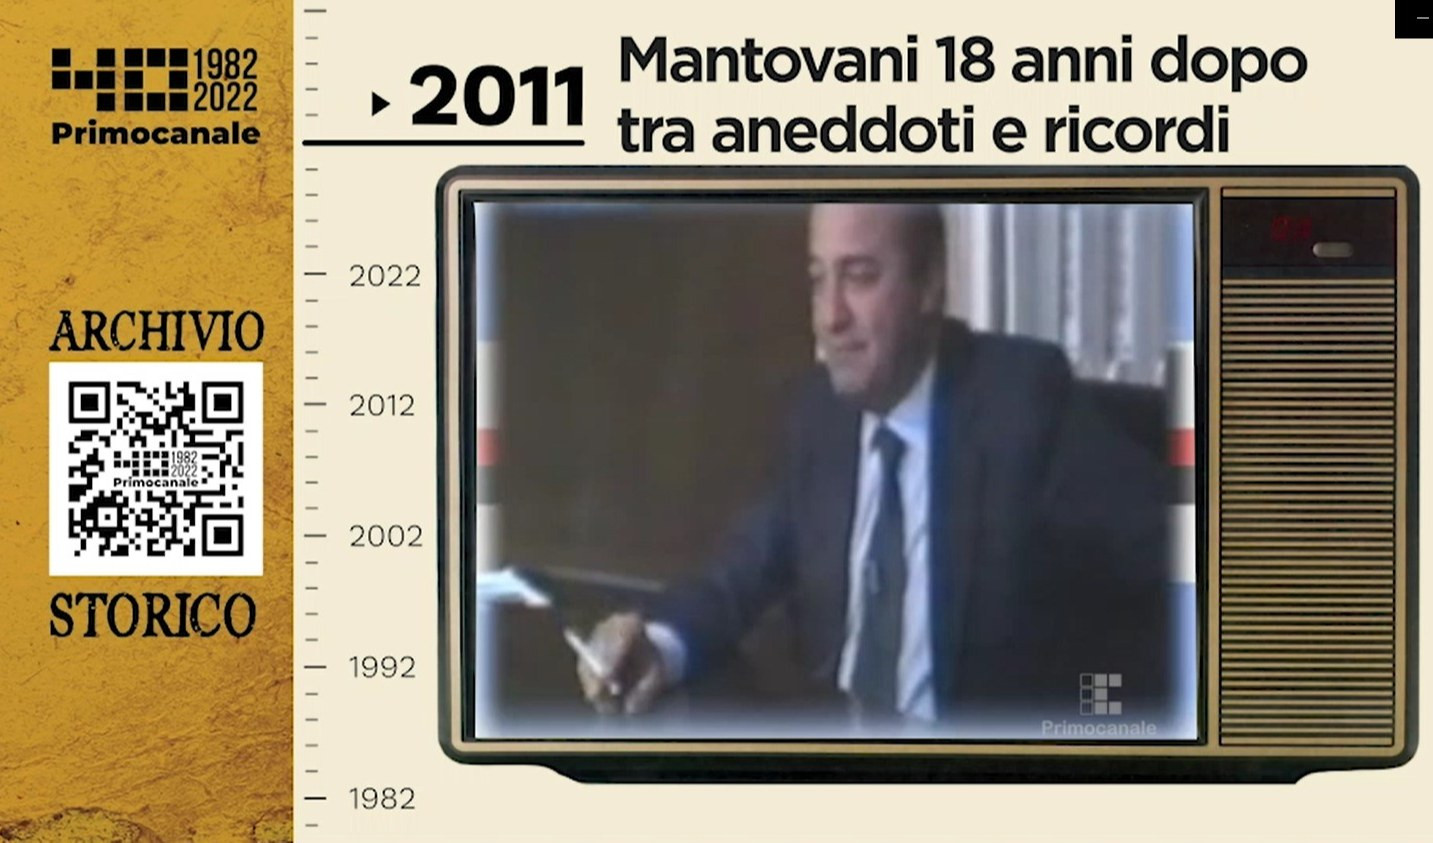 Dall'archivio storico di Primocanale, Paolo Mantovani tra aneddoti e ricordi